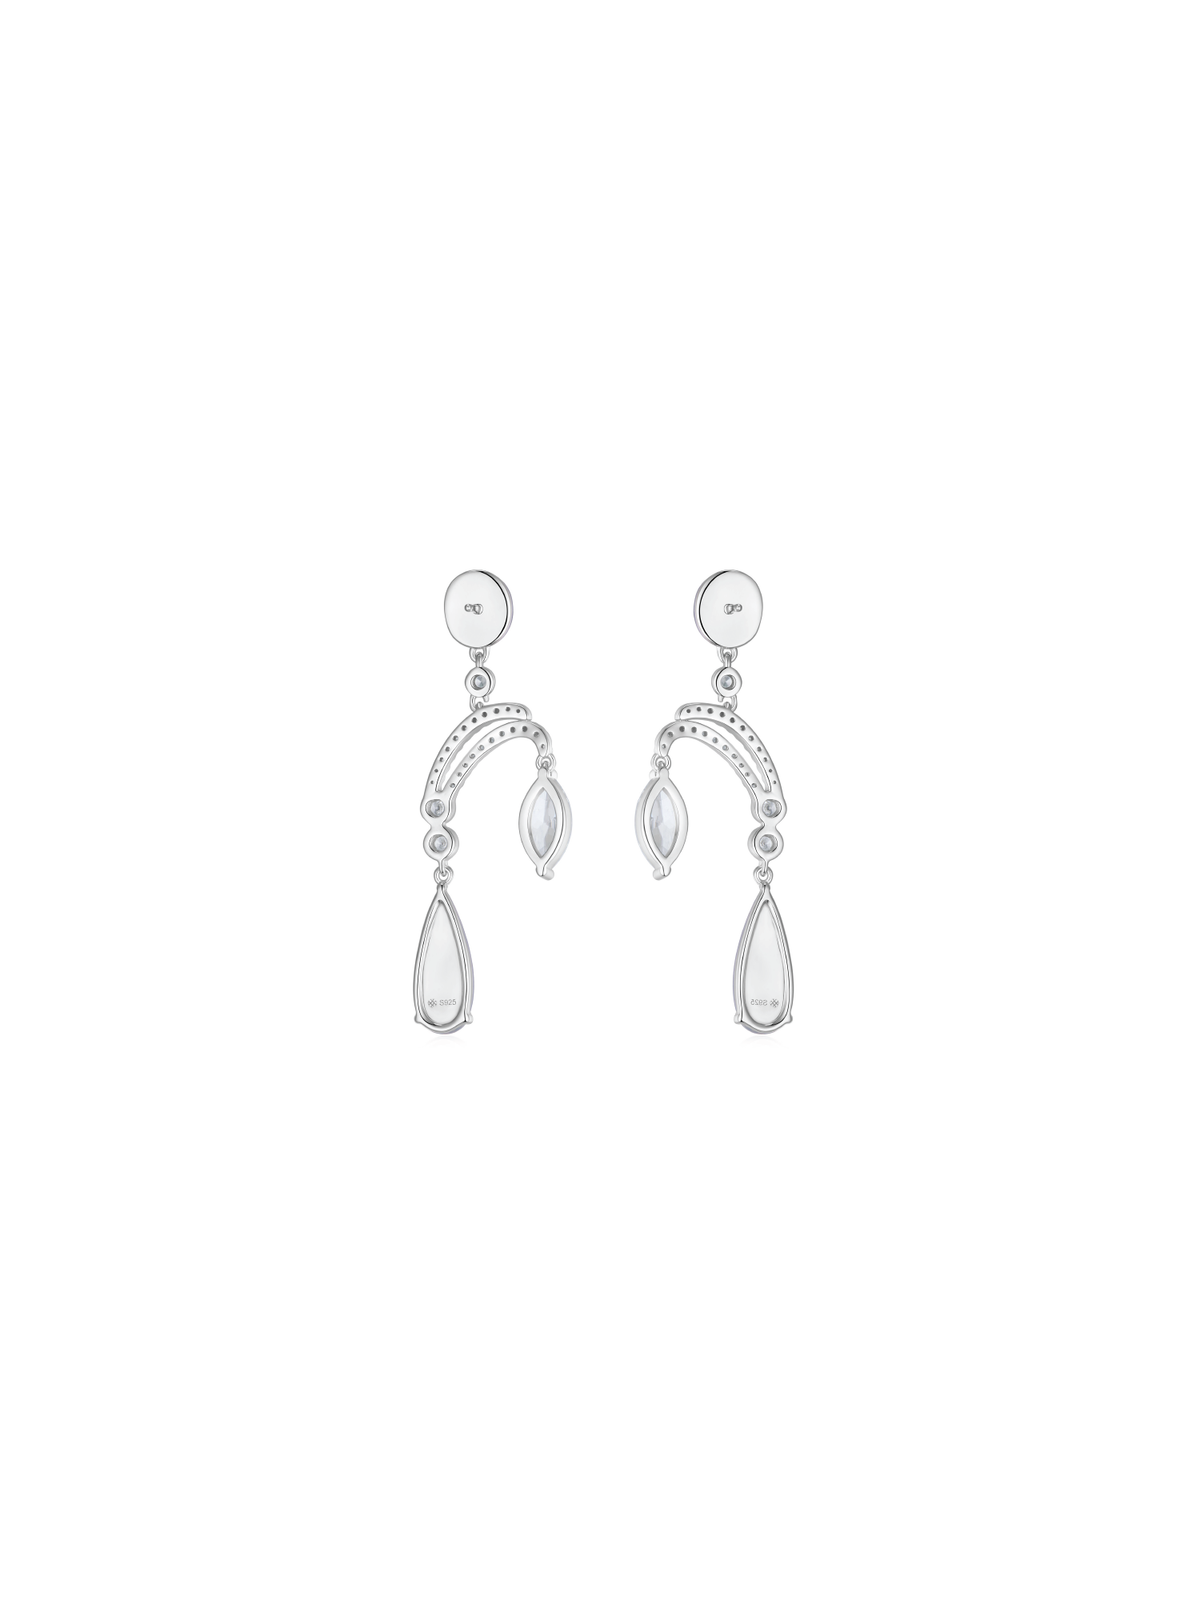 Aqua Essence Earrings (White) (Pair)